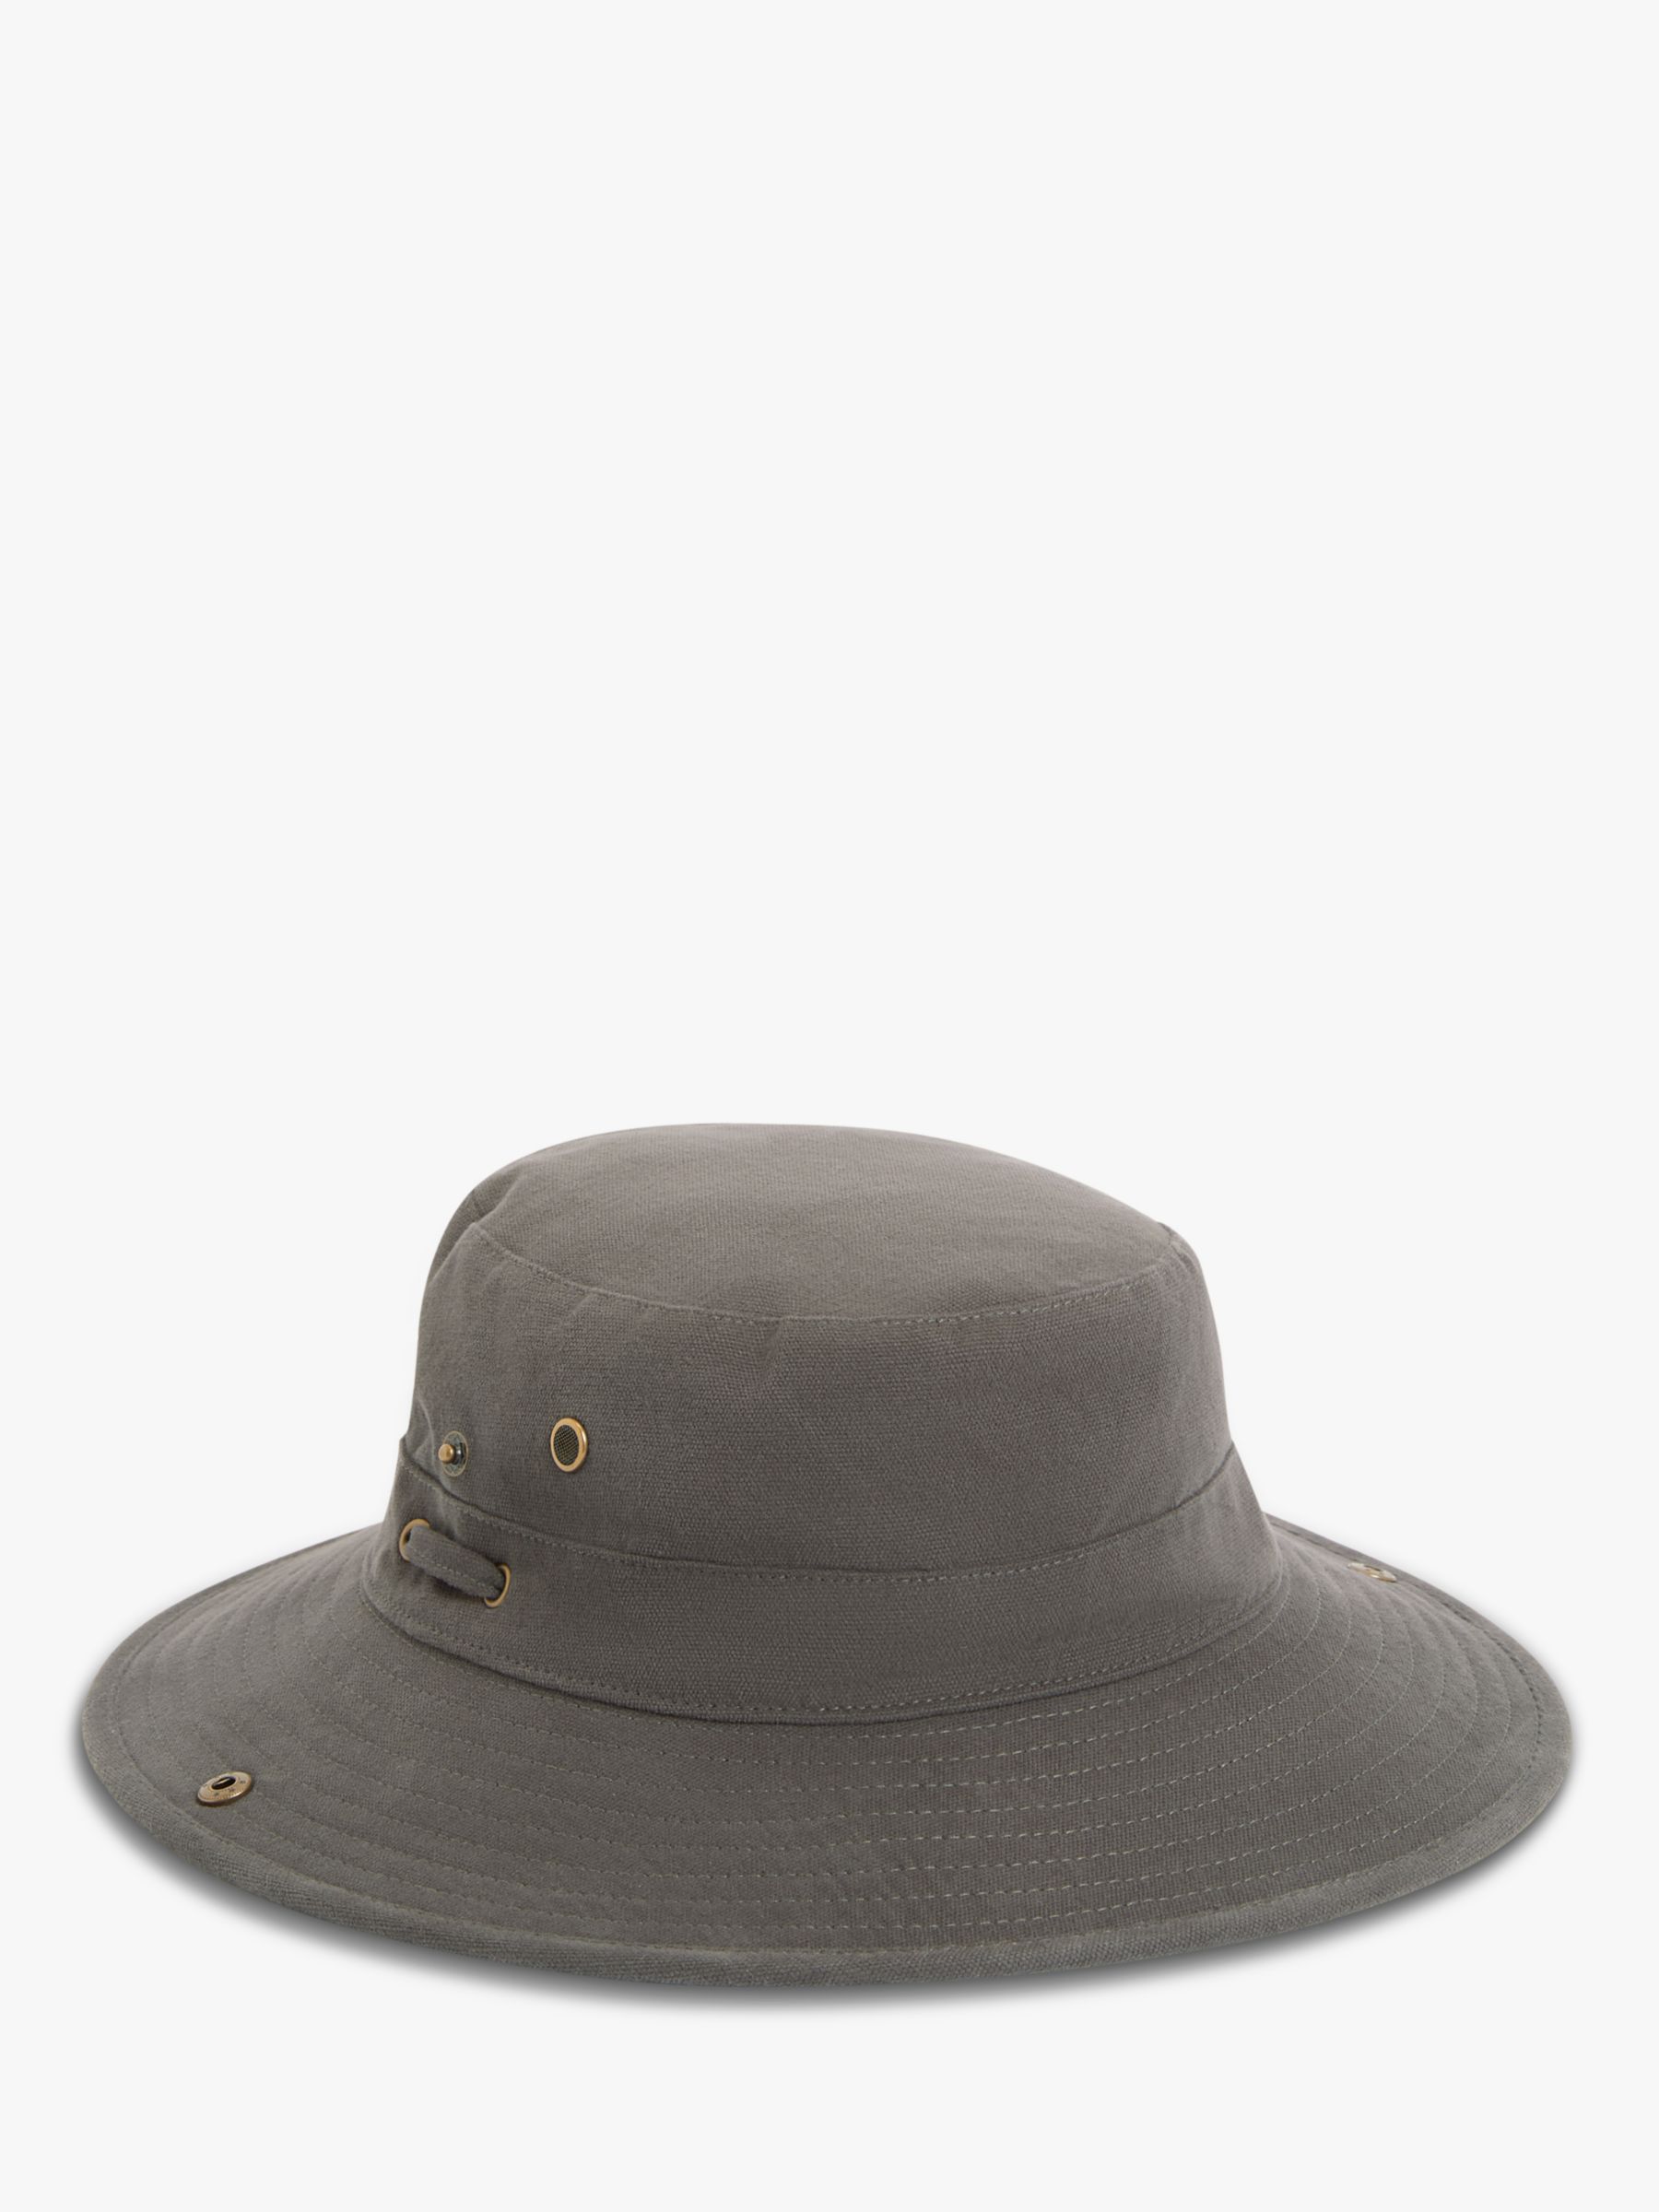 Buy John Lewis Cotton Safari Hat Online at johnlewis.com